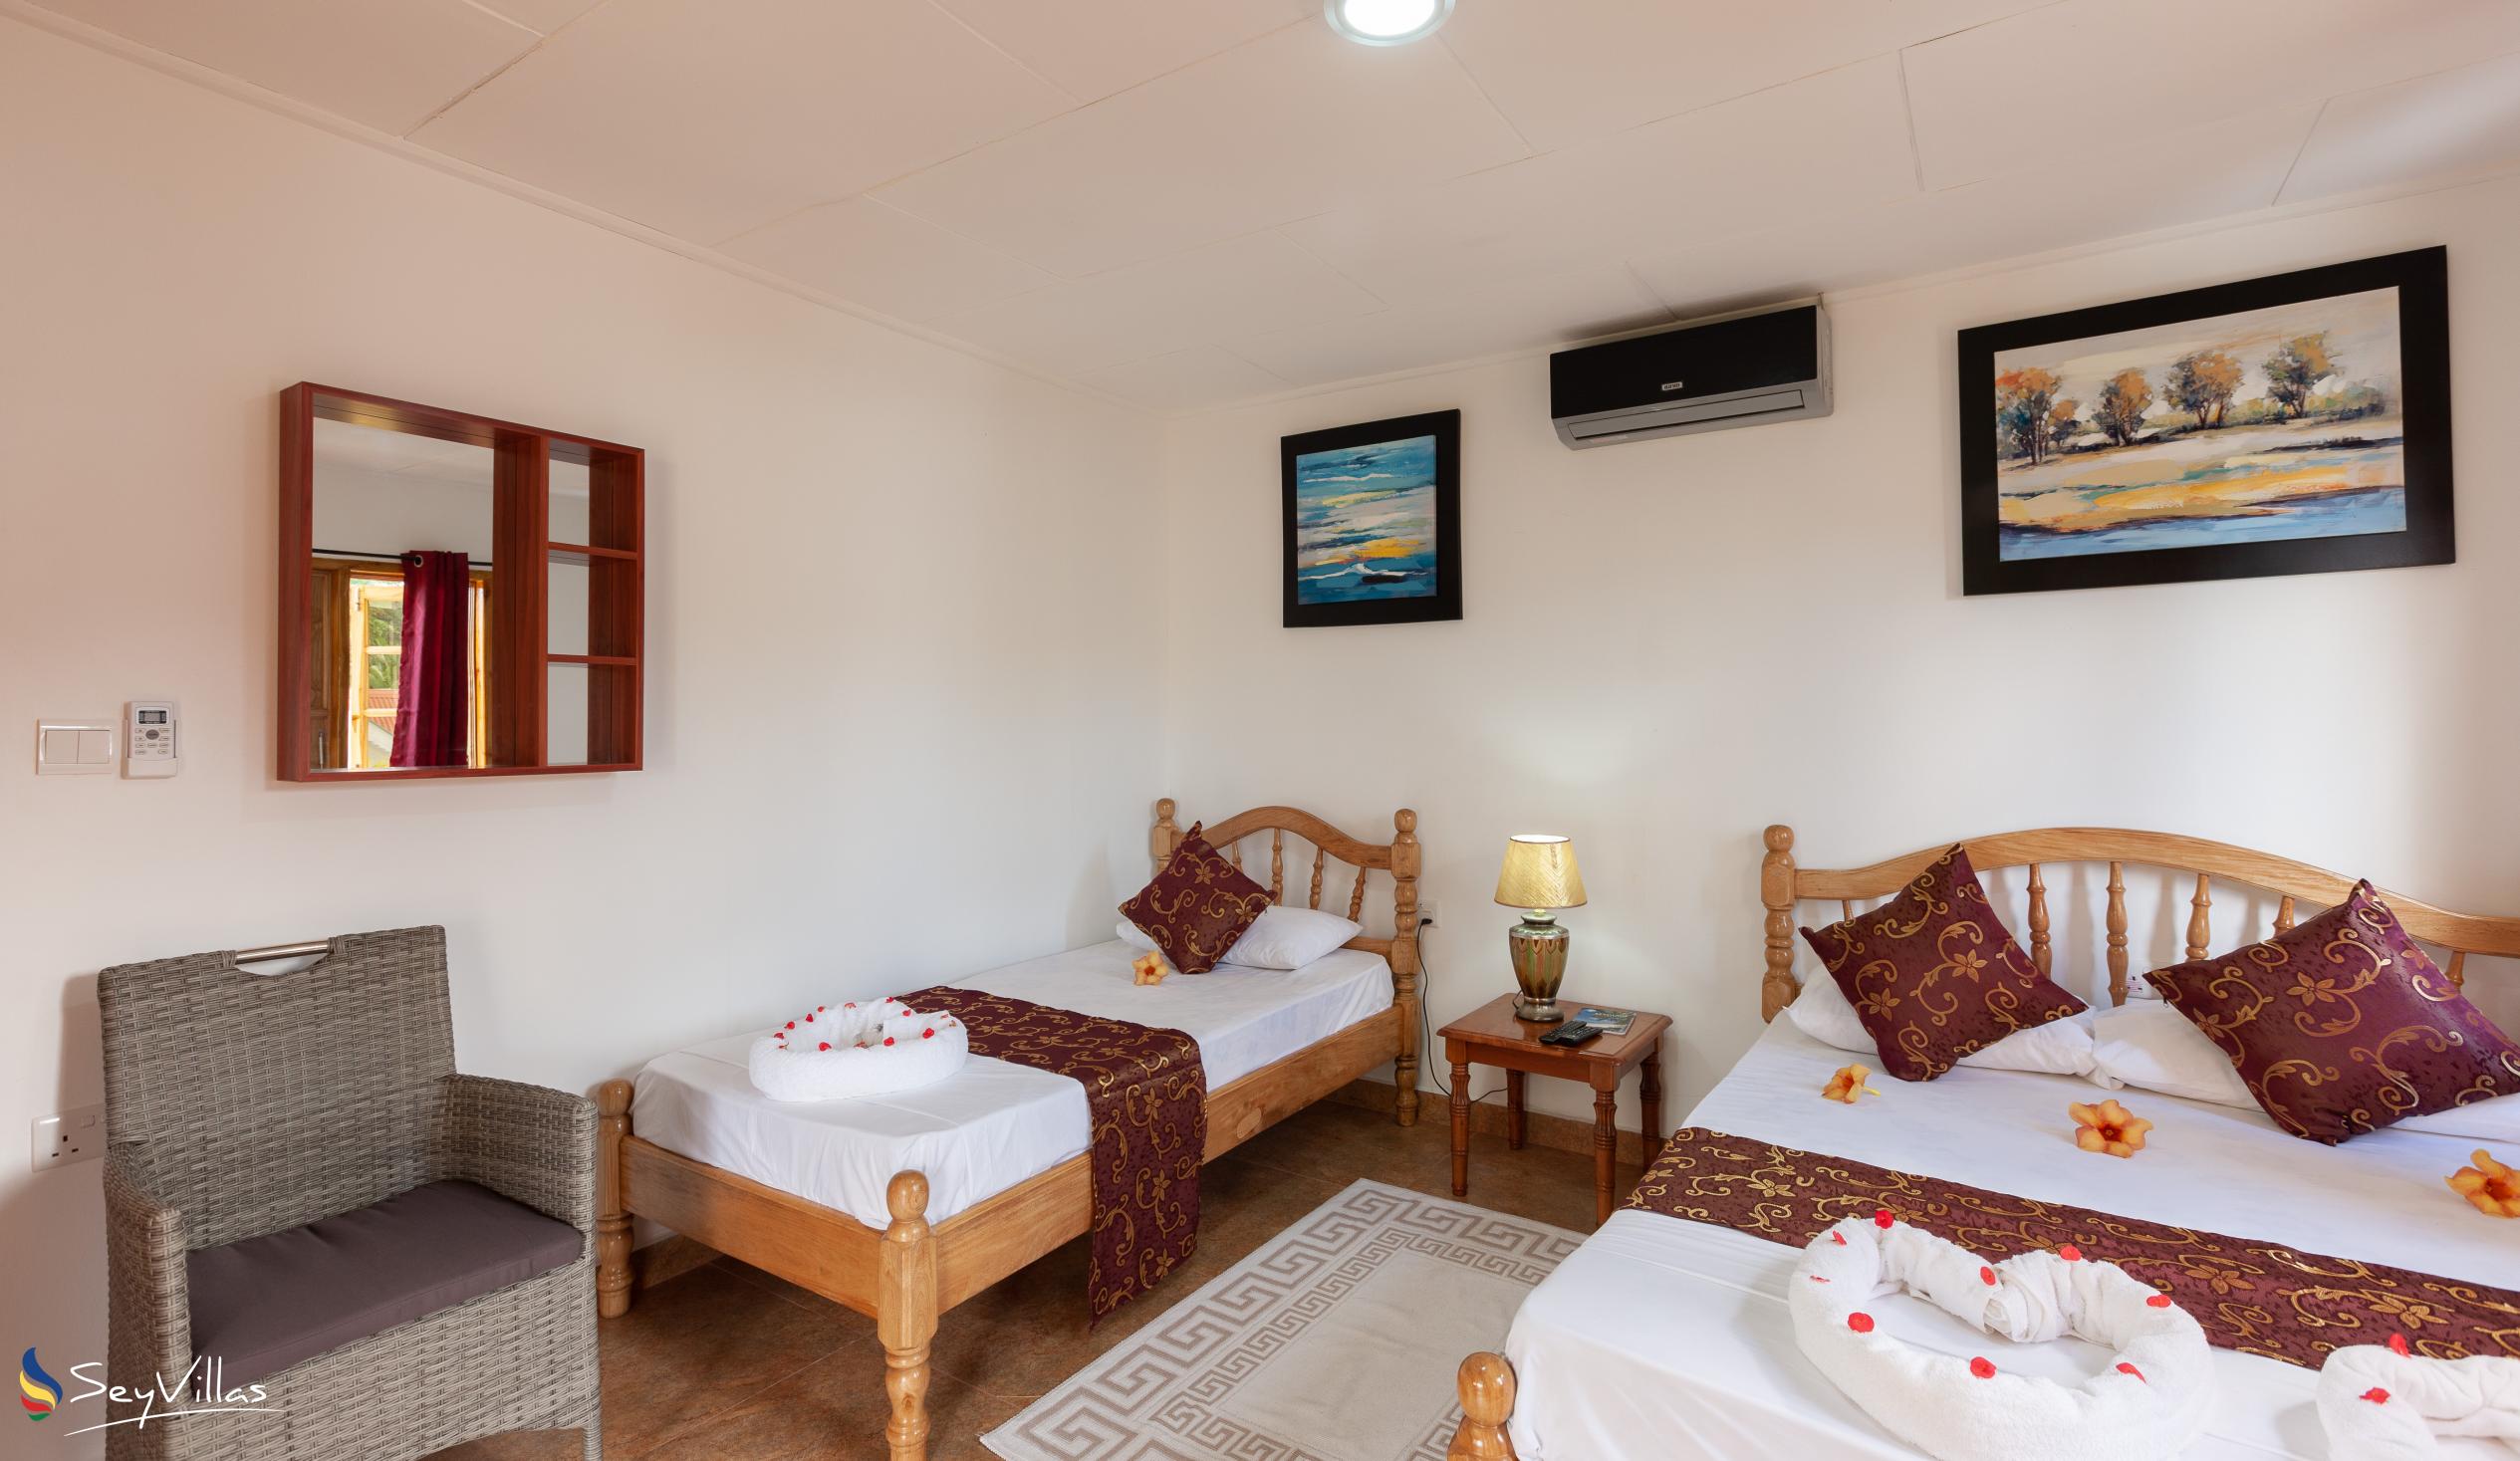 Foto 24: Dream Holiday Self Catering - Appartamento Familiare - La Digue (Seychelles)